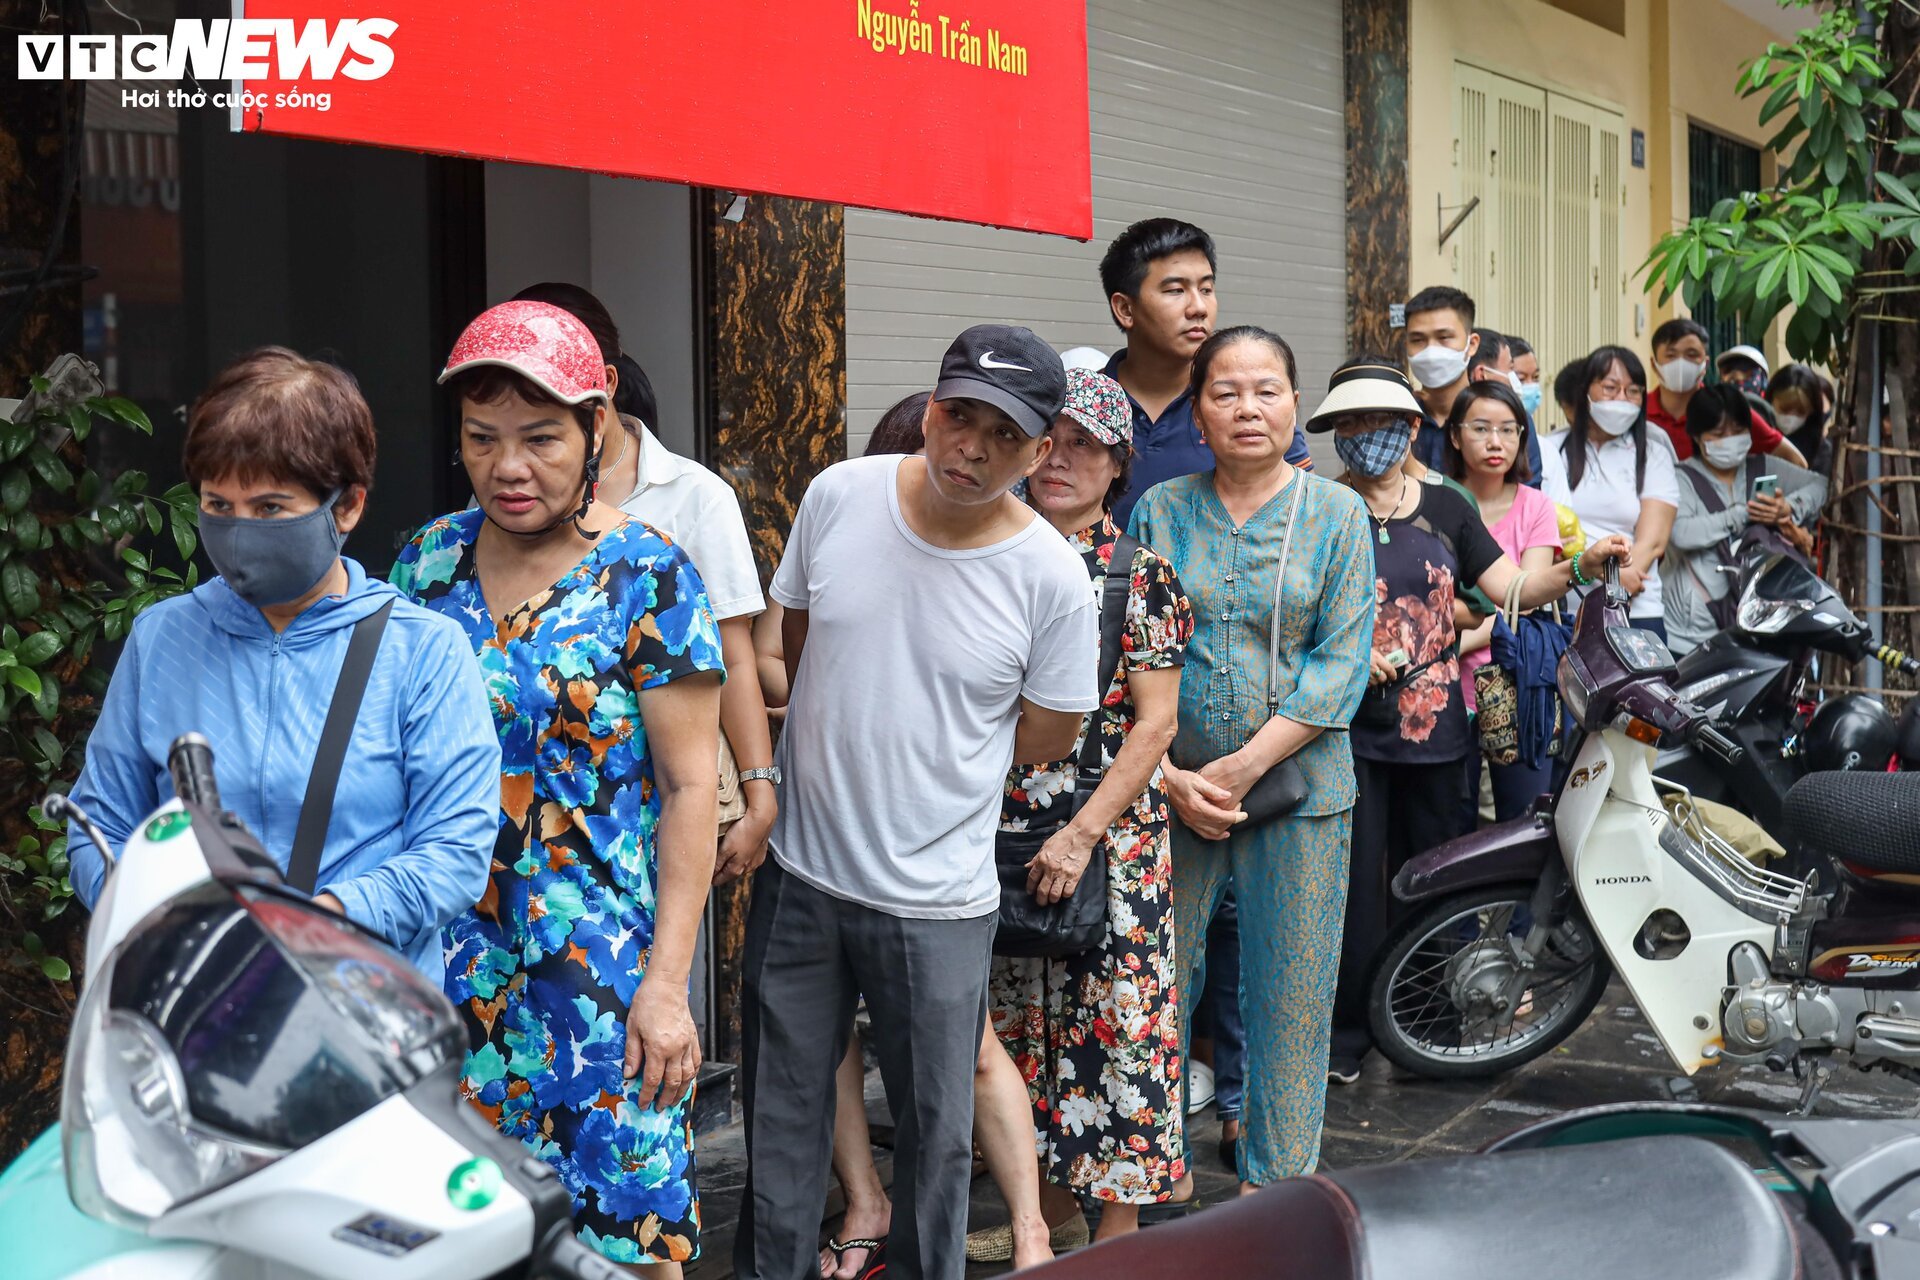 Hàng trăm người xếp hàng chờ mua bánh trung thu ở Hà Nội - Ảnh 10.